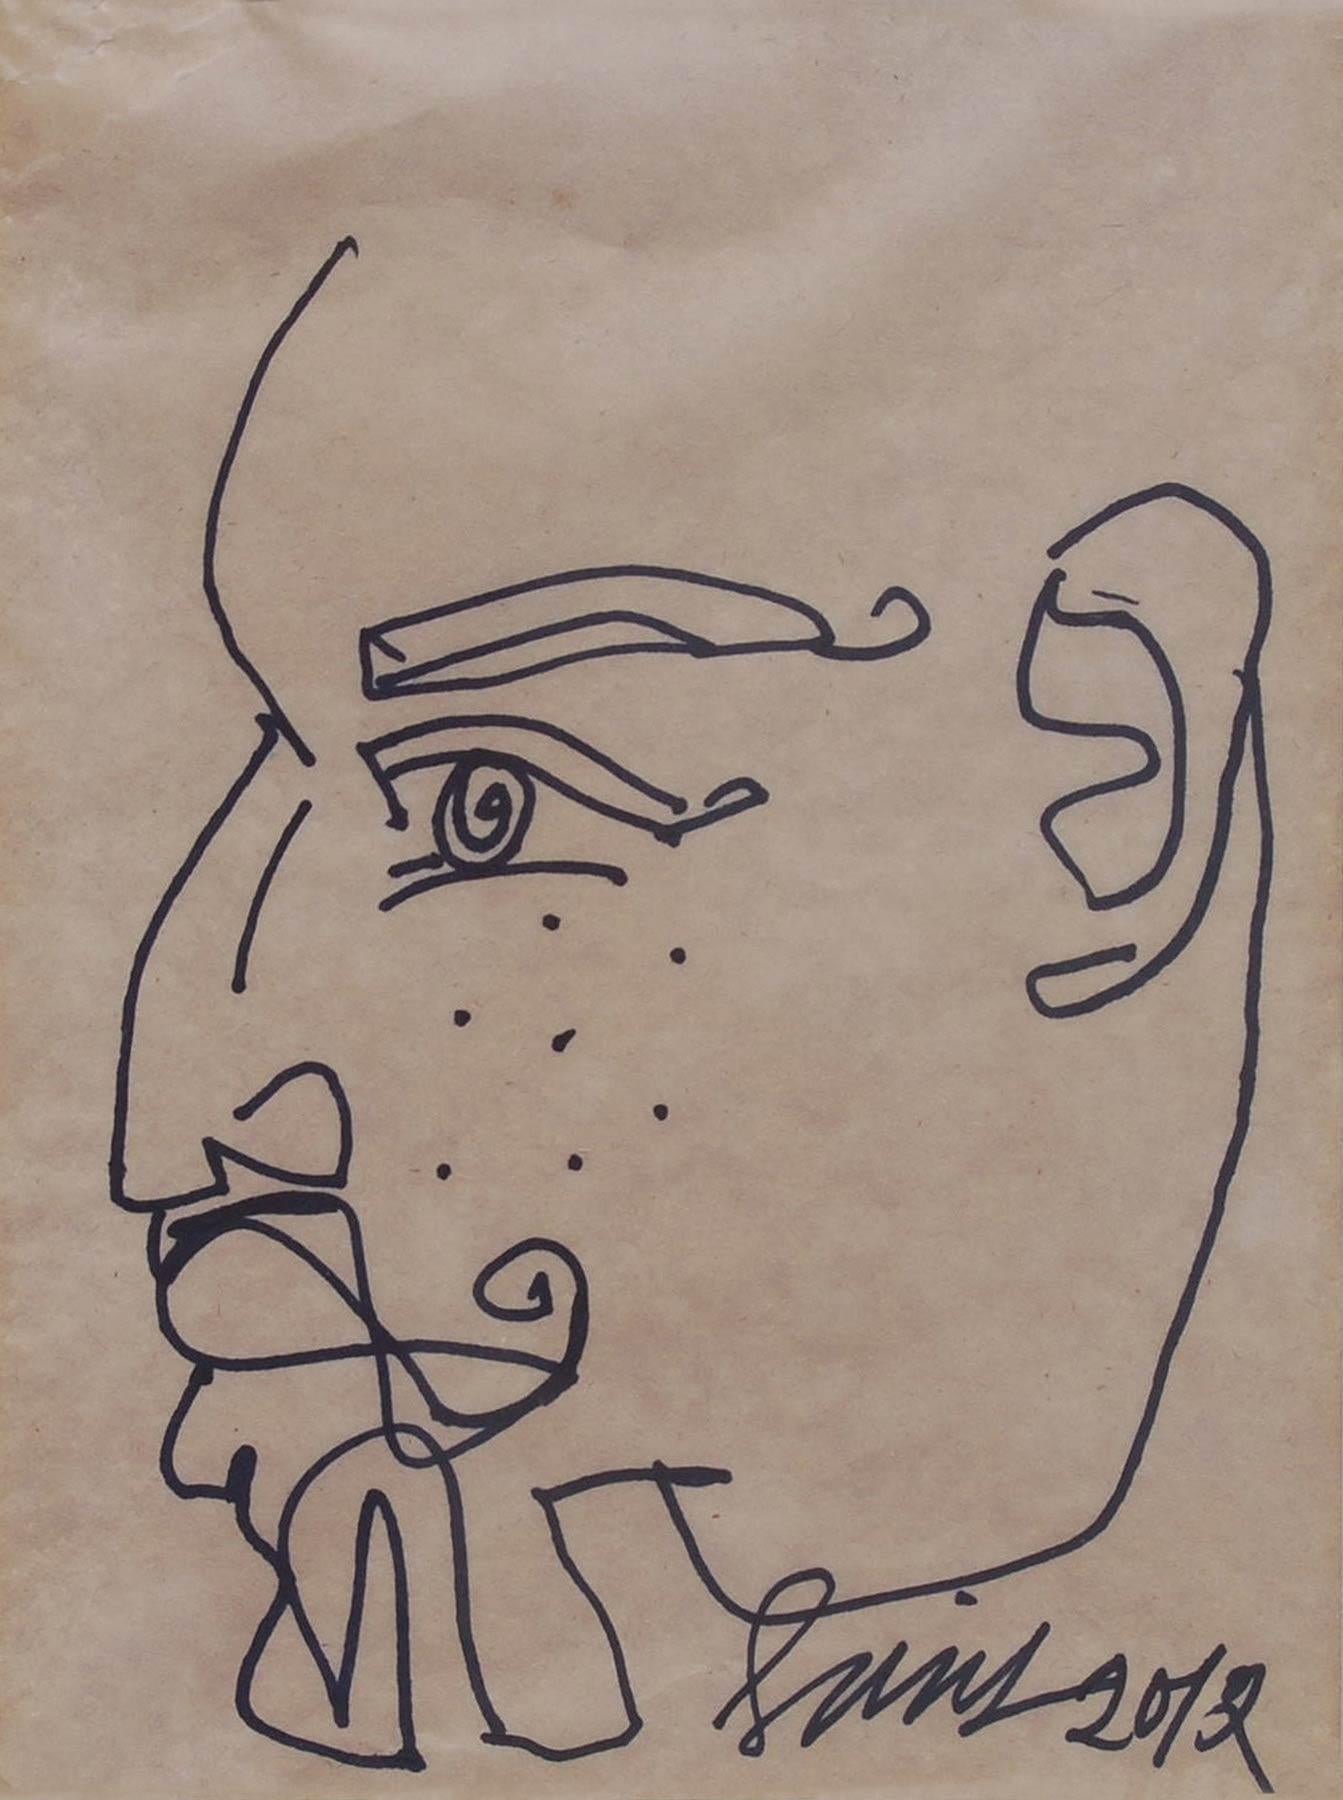 Sunil Das - Ohne Titel - 9 x 7 Zoll (ungerahmte Größe)
Feder und Tinte auf Papier, 2010 & 2012 (2er Set)
Inklusive Versand in hängefertiger Form.

Eine Ausnahme bilden die Gesichter wie die Profile bärtiger Männer, bei denen der Inhalt nur ein